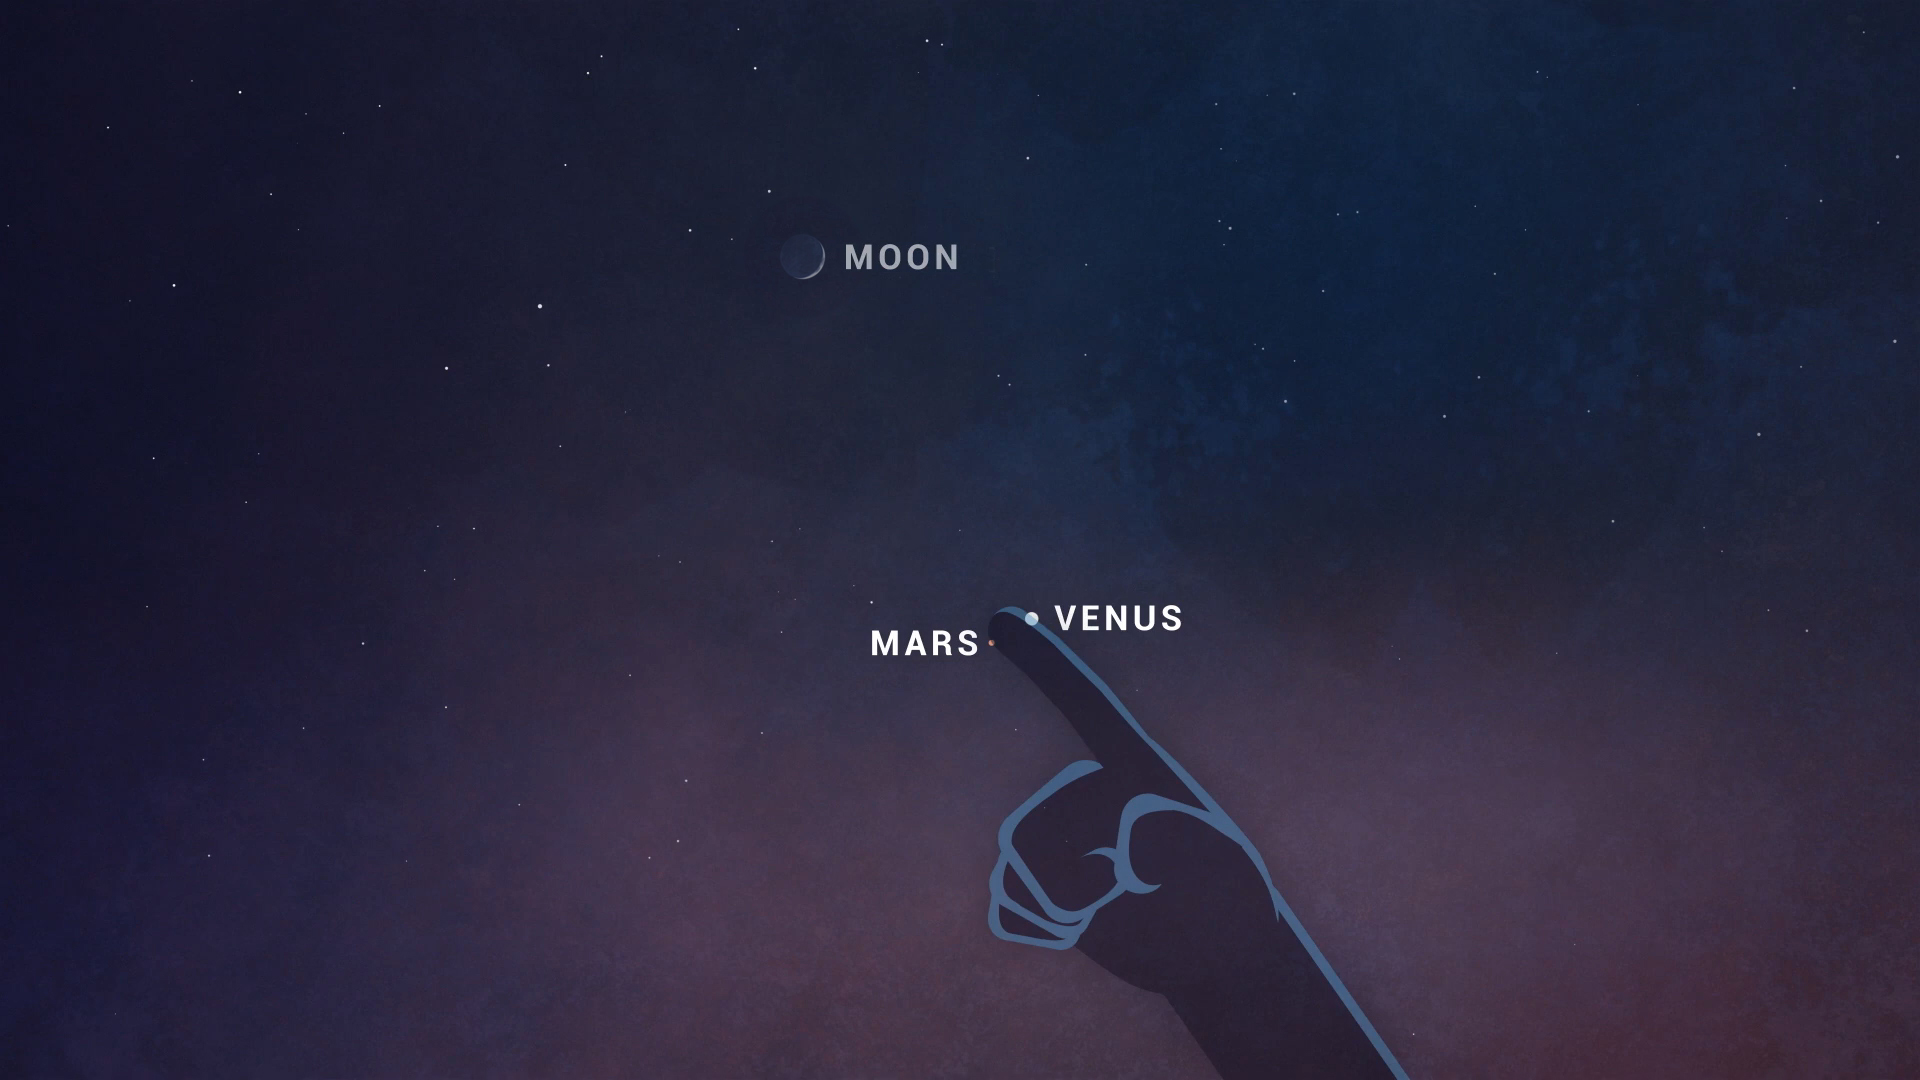 Venus Mars and Moon